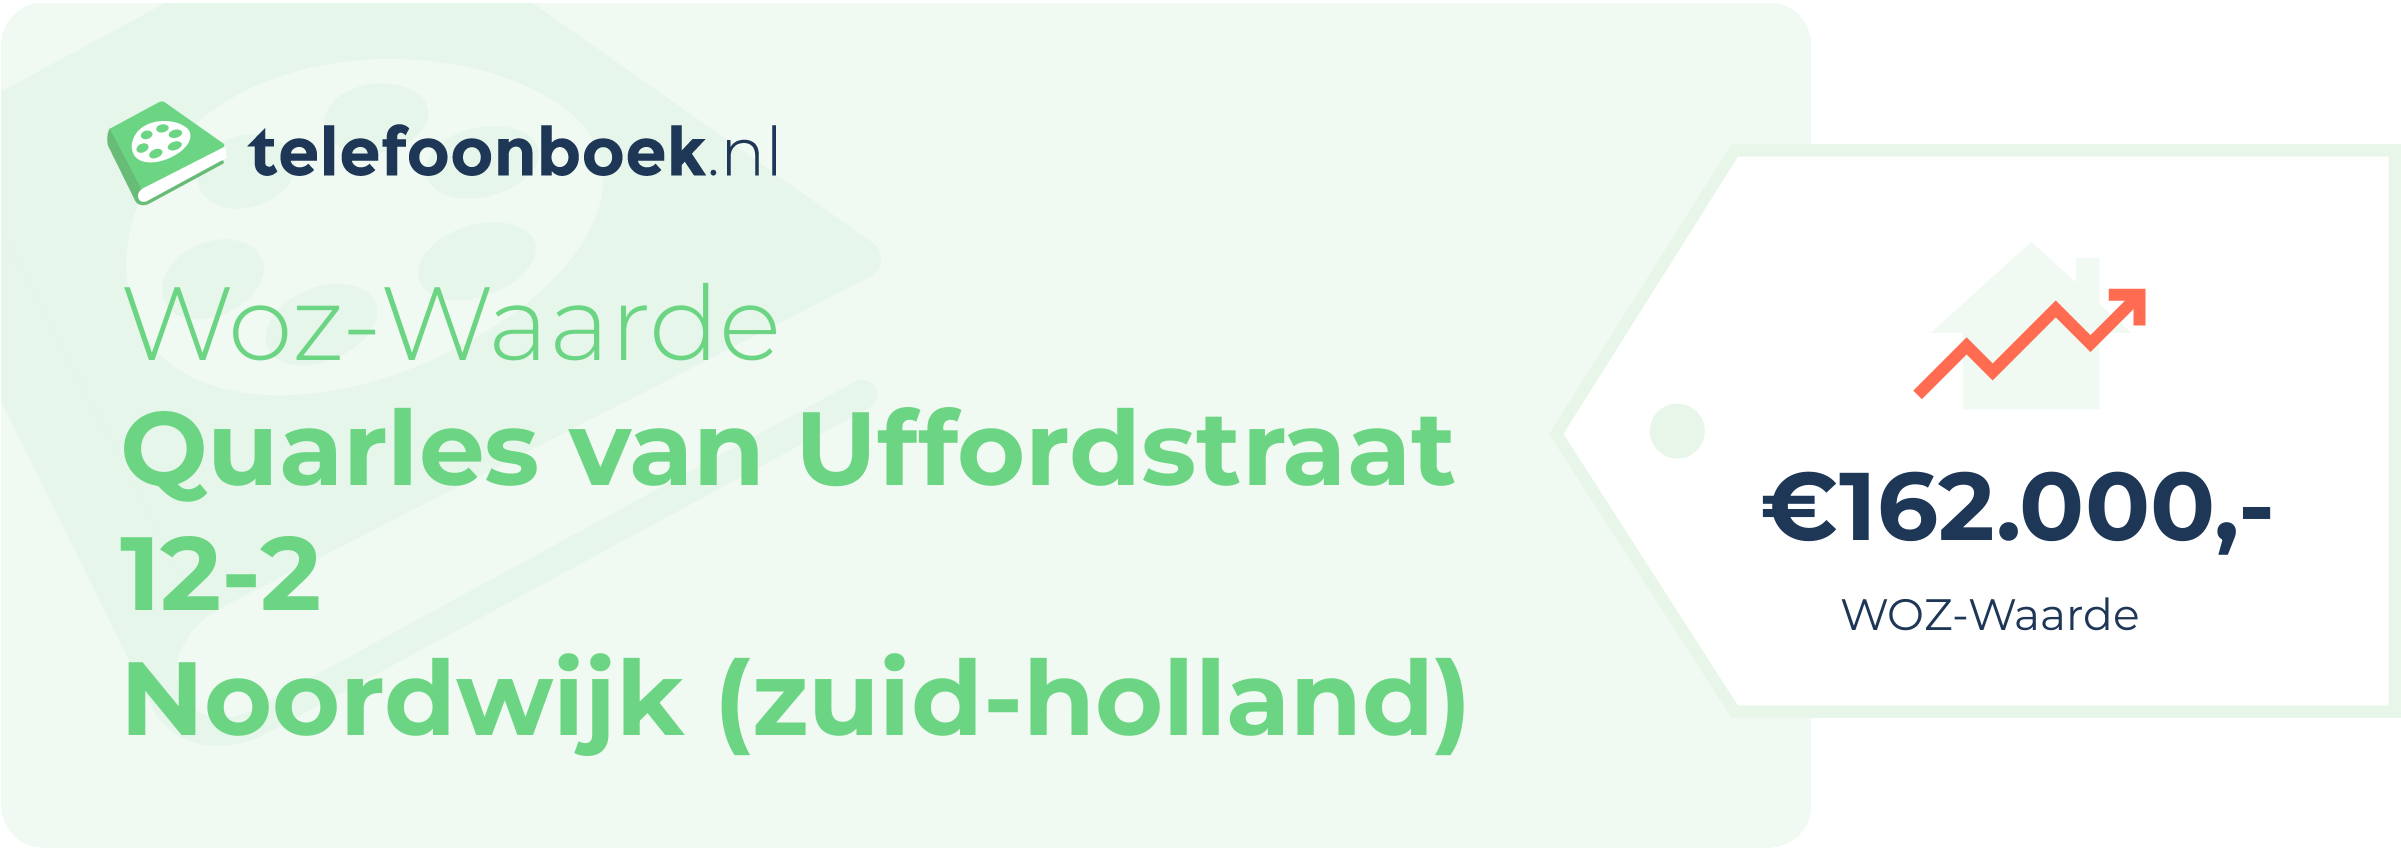 WOZ-waarde Quarles Van Uffordstraat 12-2 Noordwijk (Zuid-Holland)